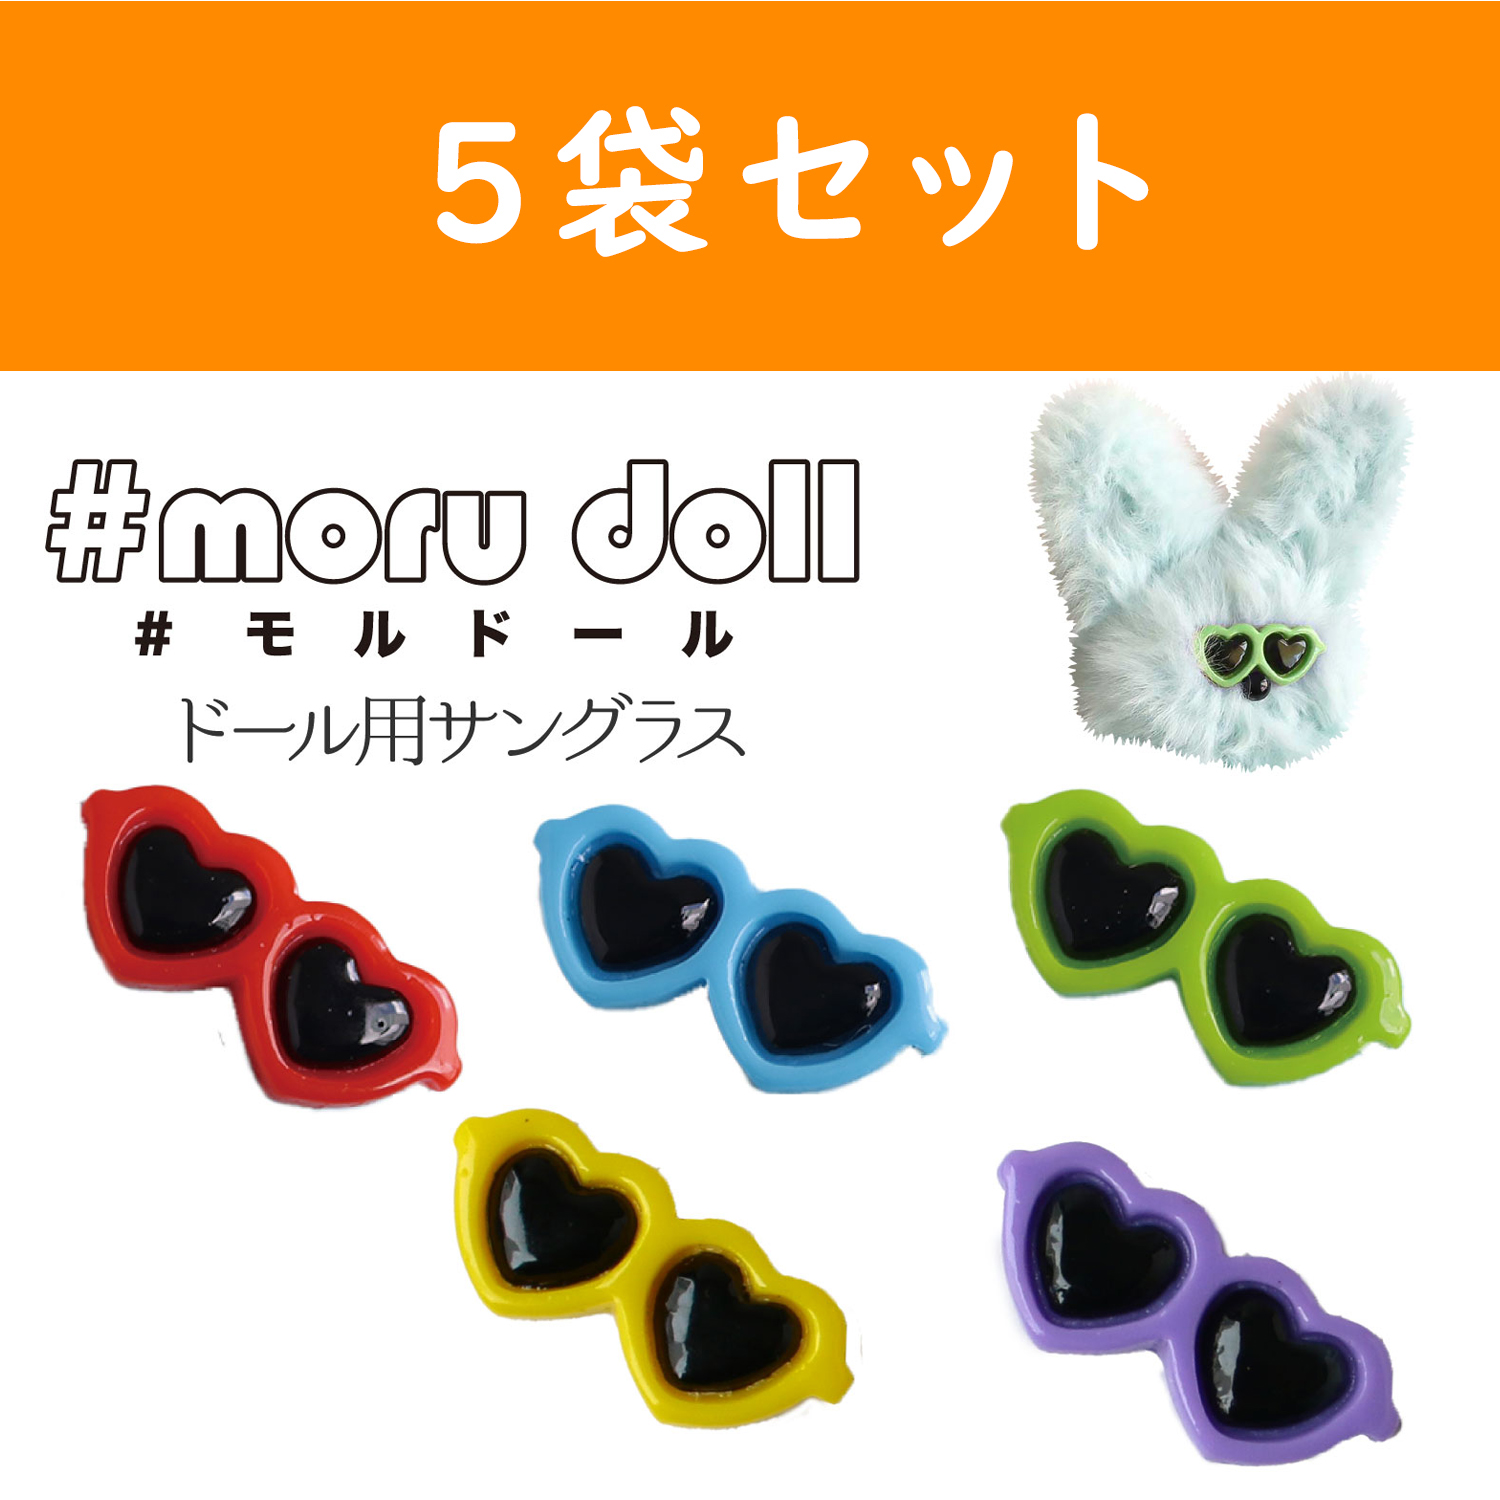 MOL-5 モール人形 モールドール  ハートサングラス 1個入×5袋セット (セット)